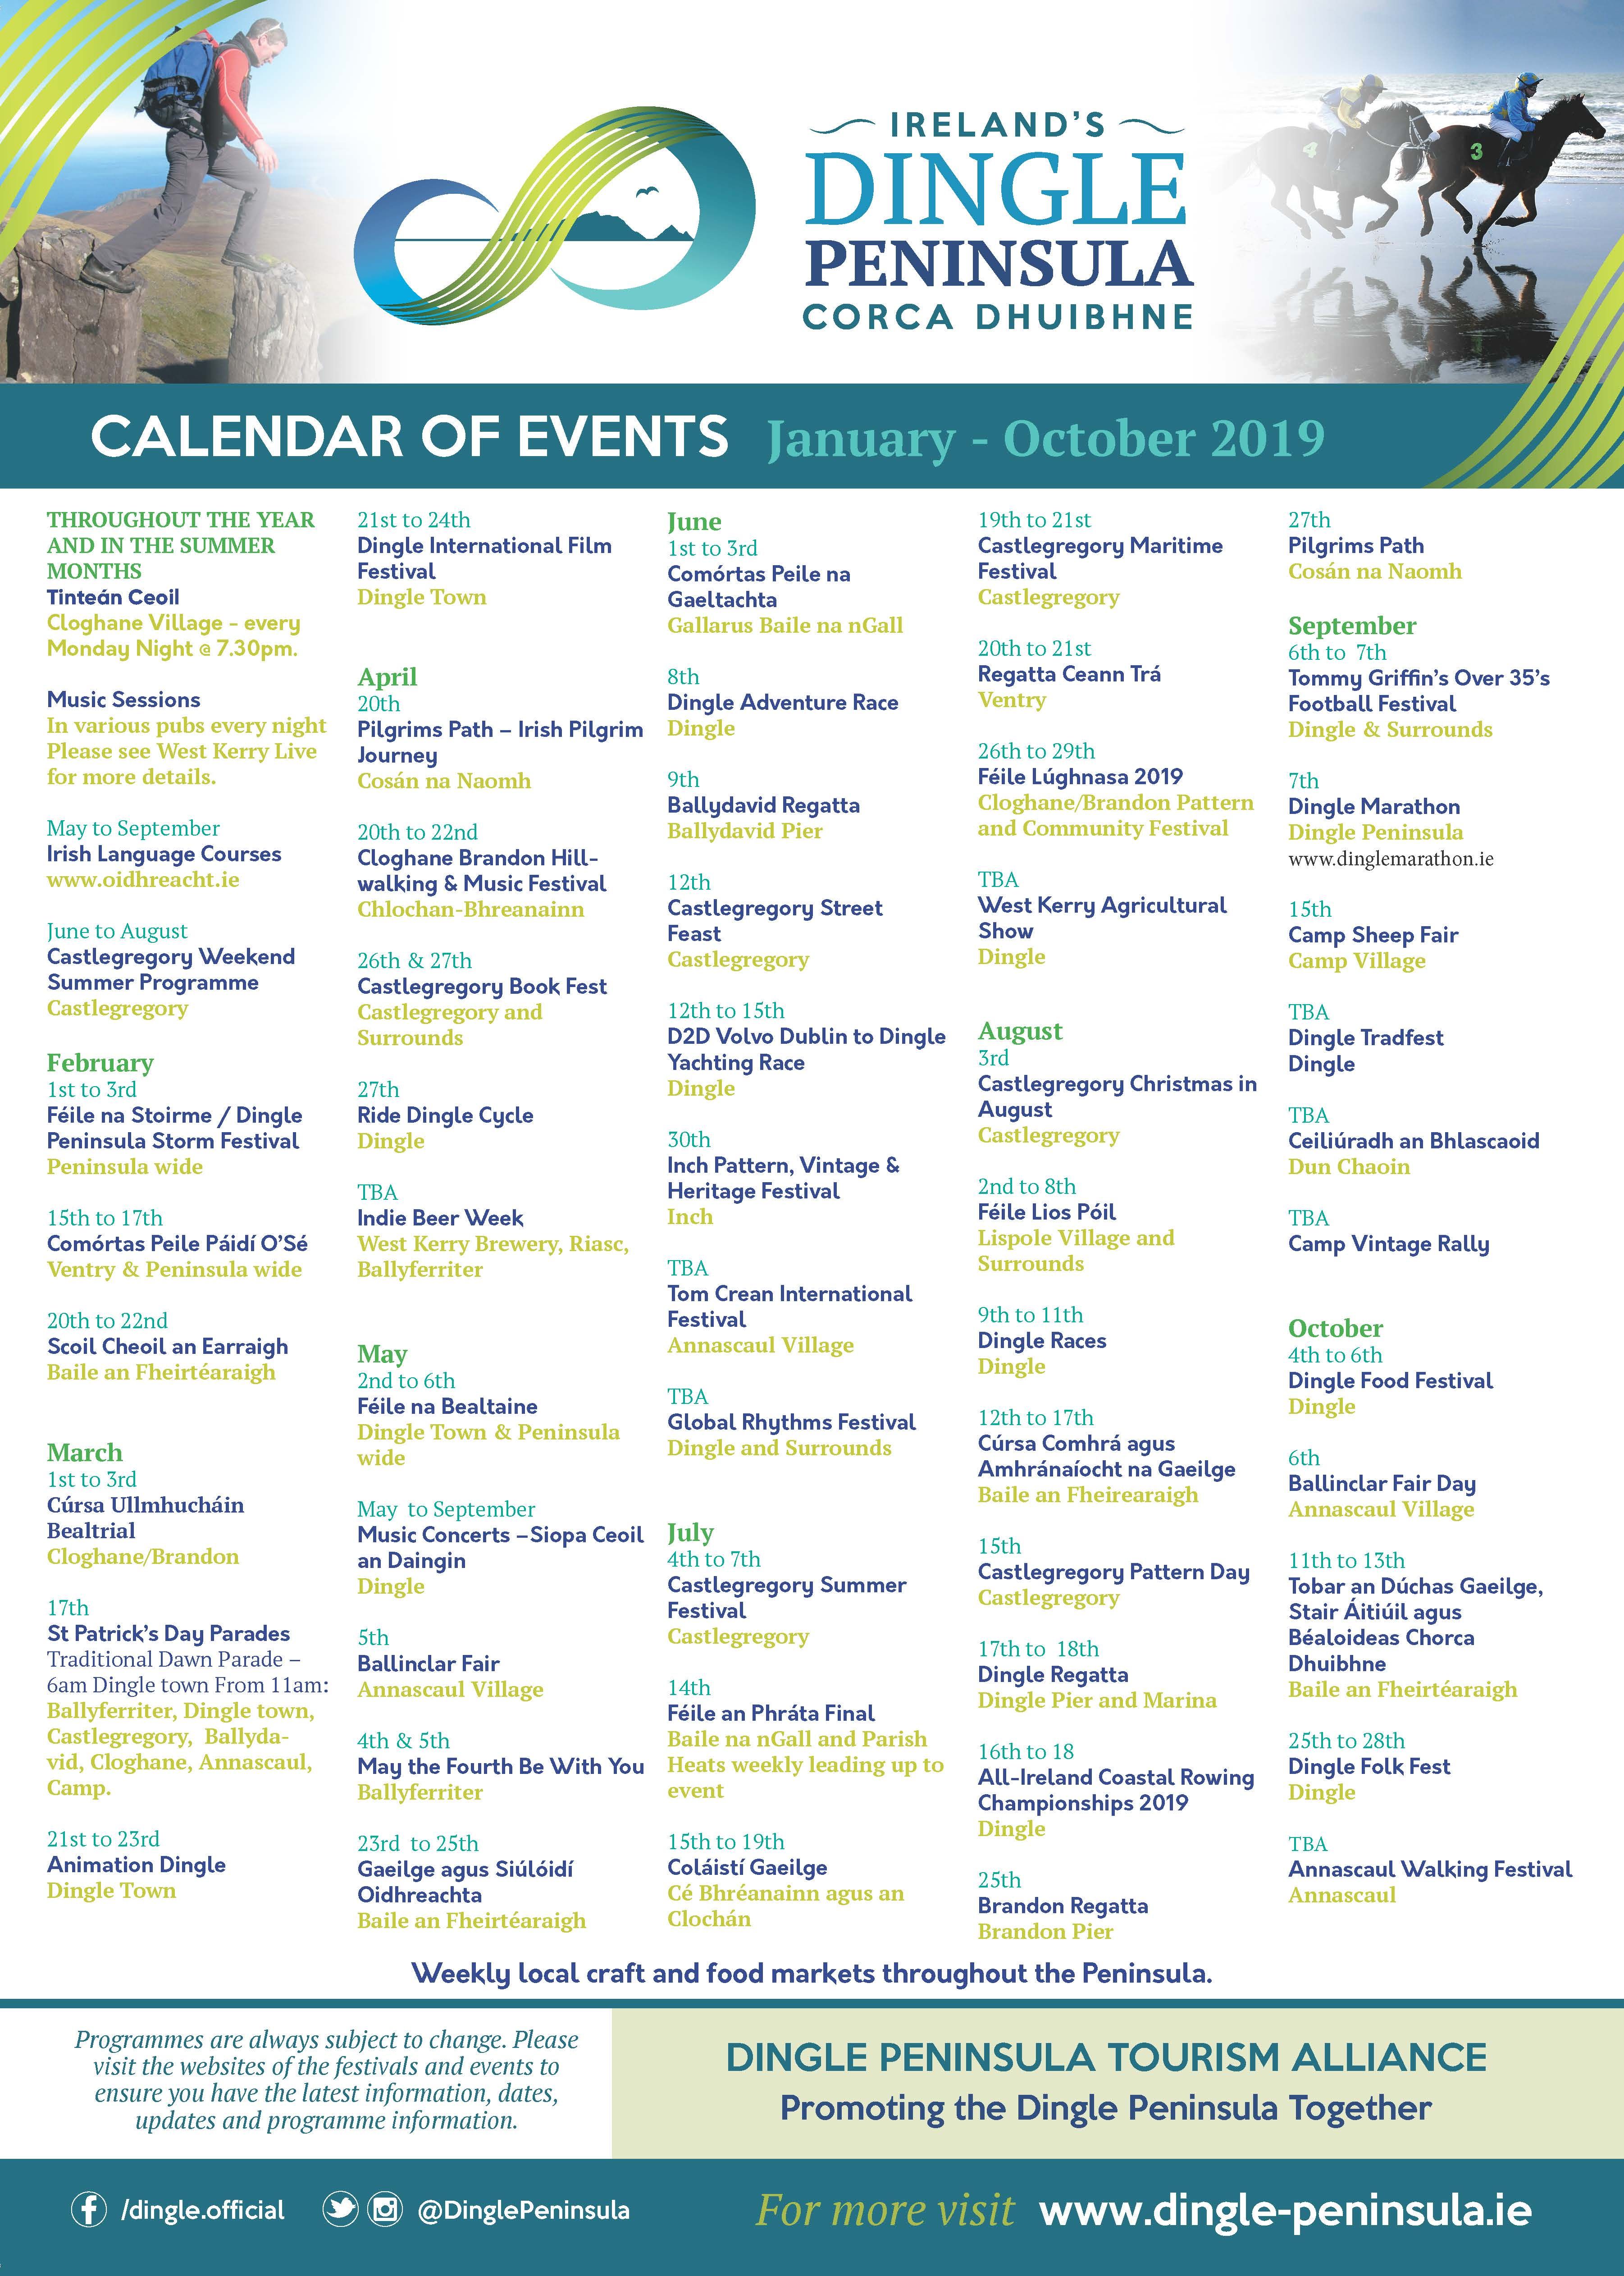 Calendar of events on Dingle Peninsula Jan - Oct 2019